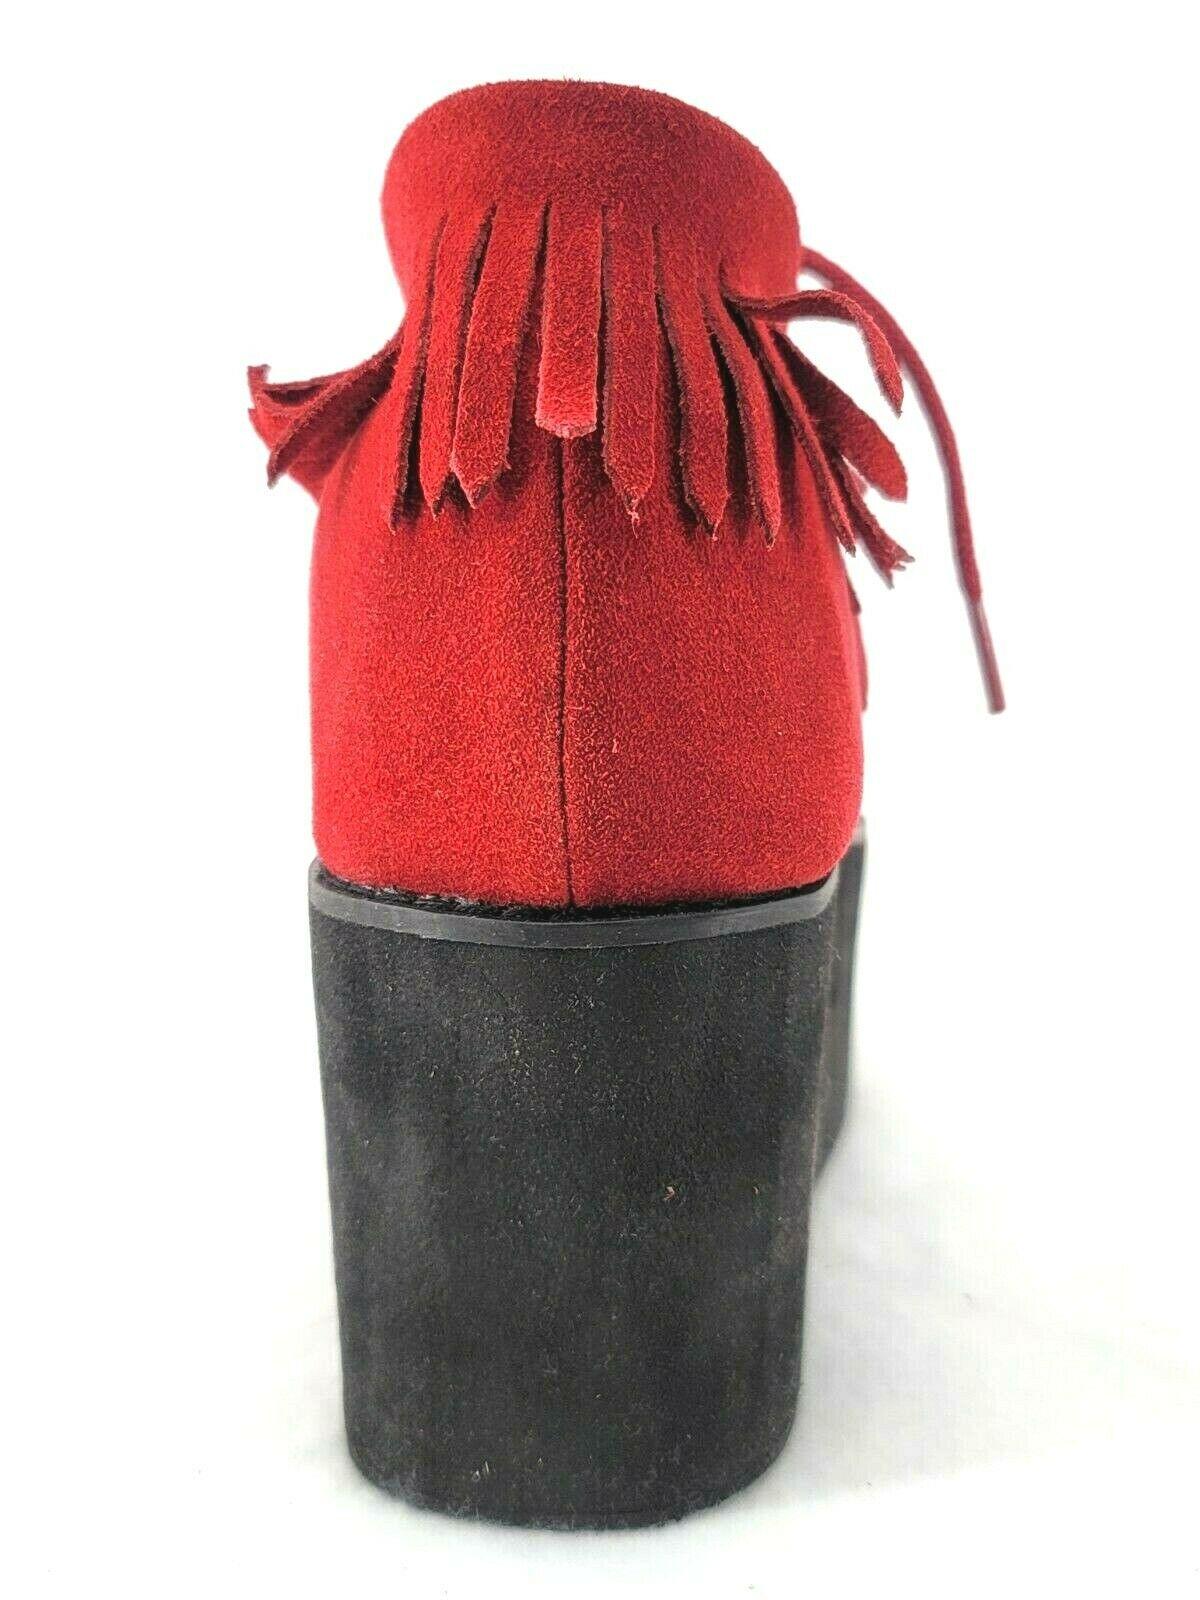 Y.R.U. ERF Women Hot Fringe Flatform Platform Creeper red  Shoes Size 7.5 - SVNYFancy